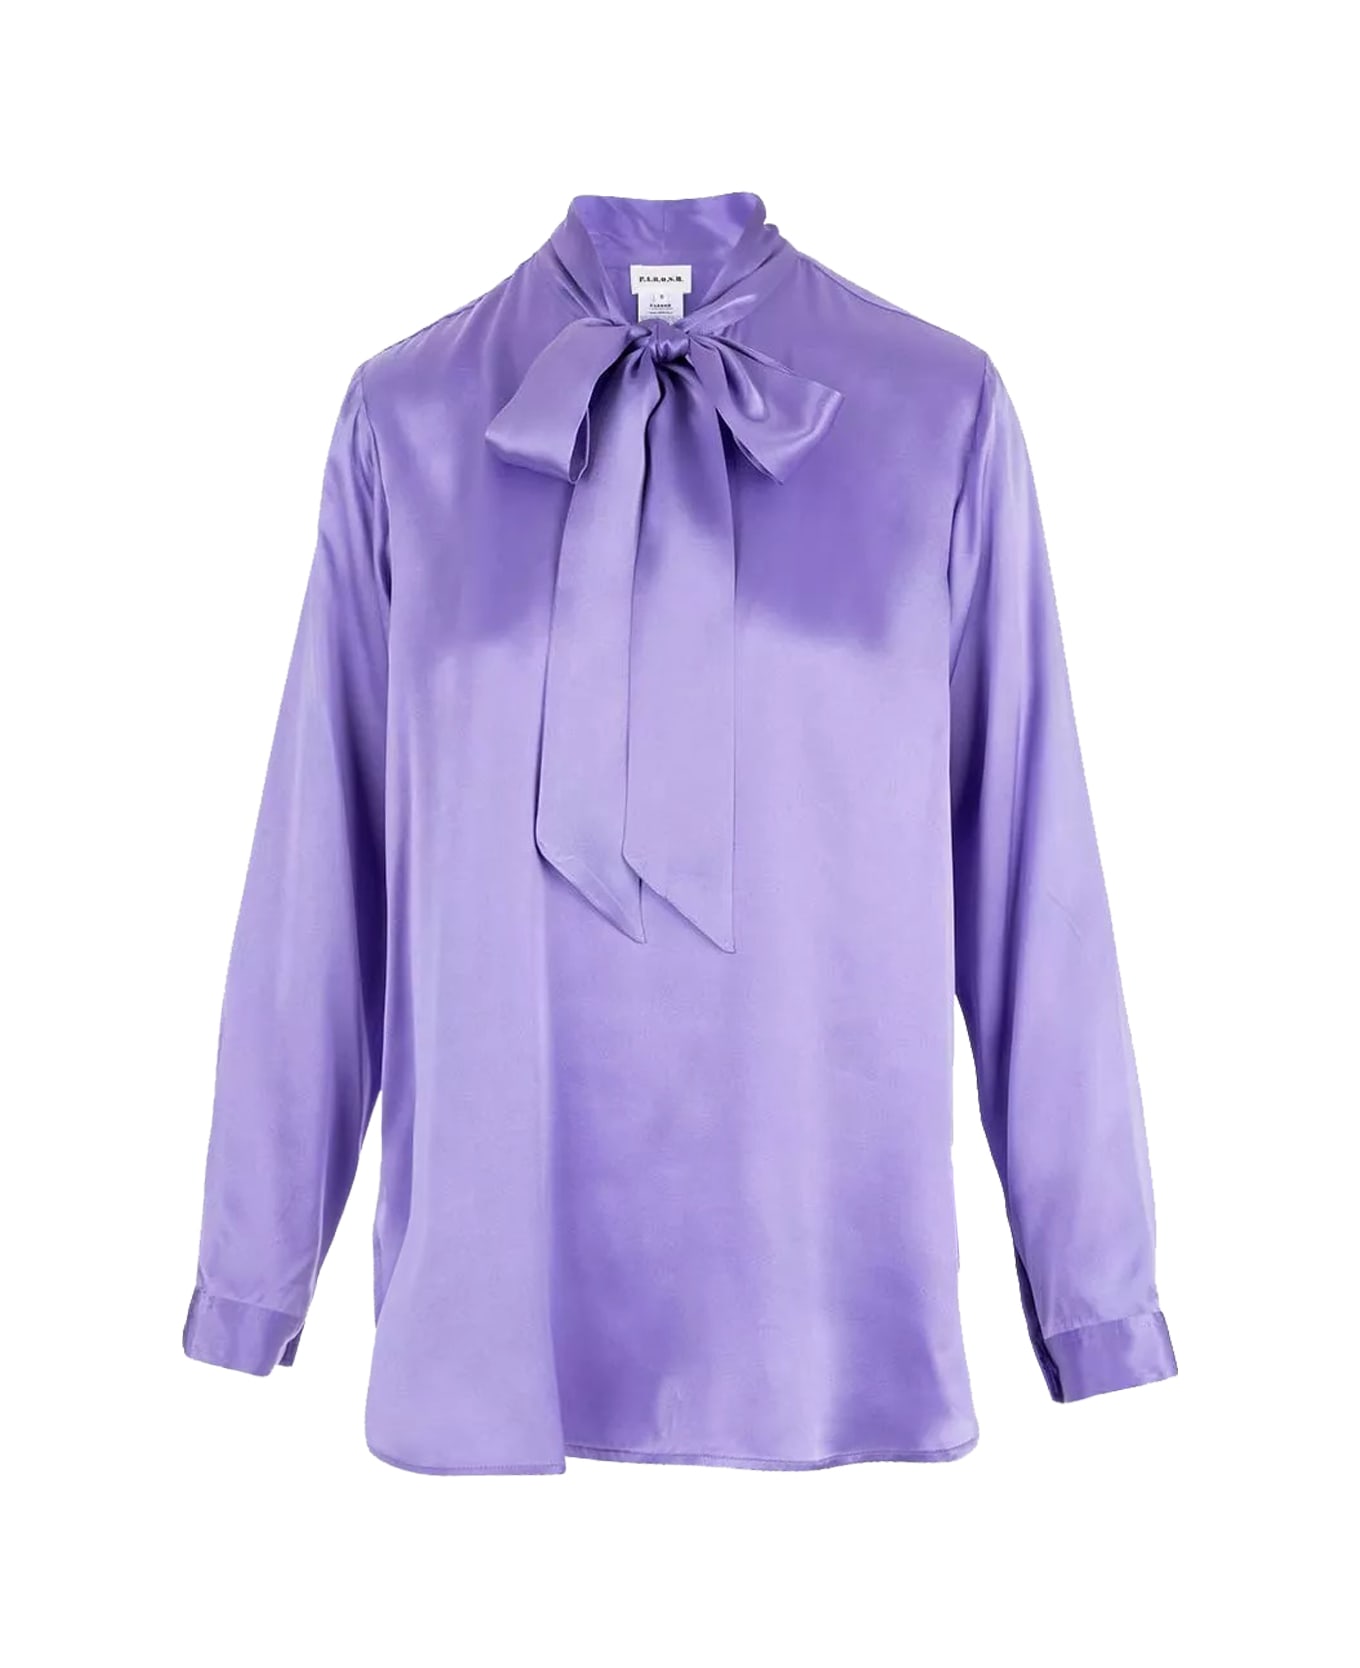 Parosh Shirt - Lilac